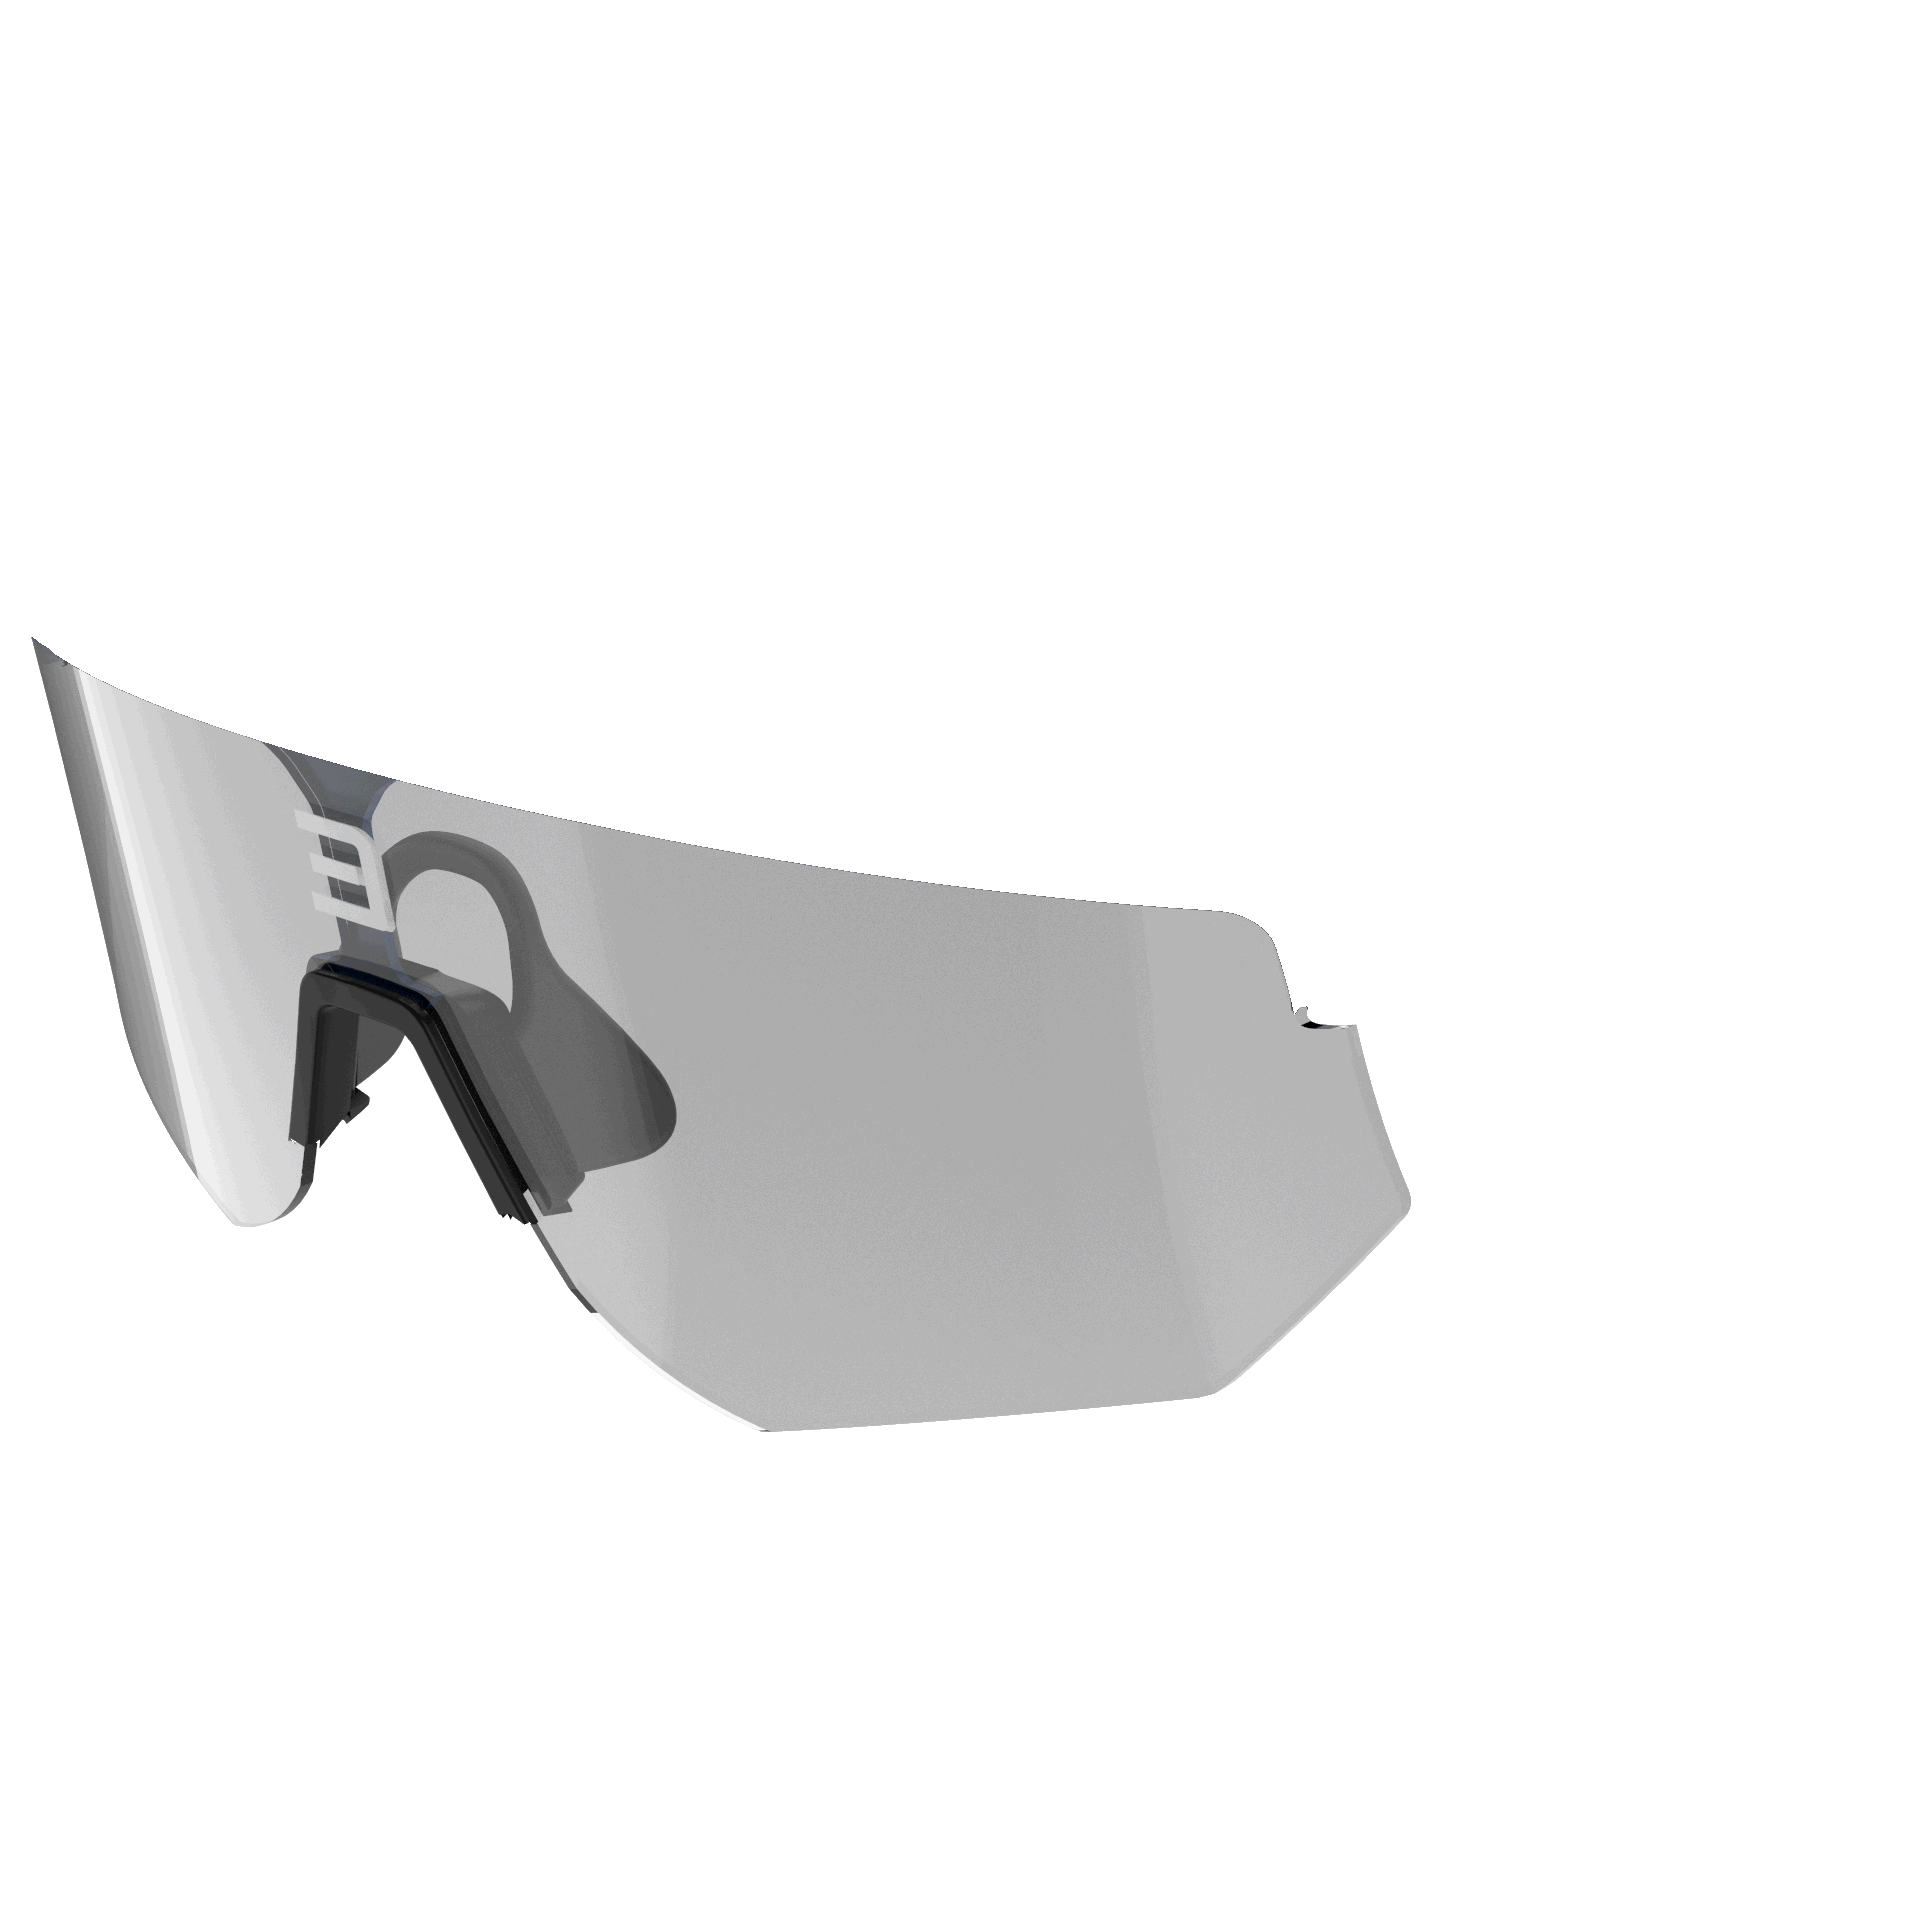 Pochette en microfibre et lingette microfibre noire pour lunettes - Enihcam